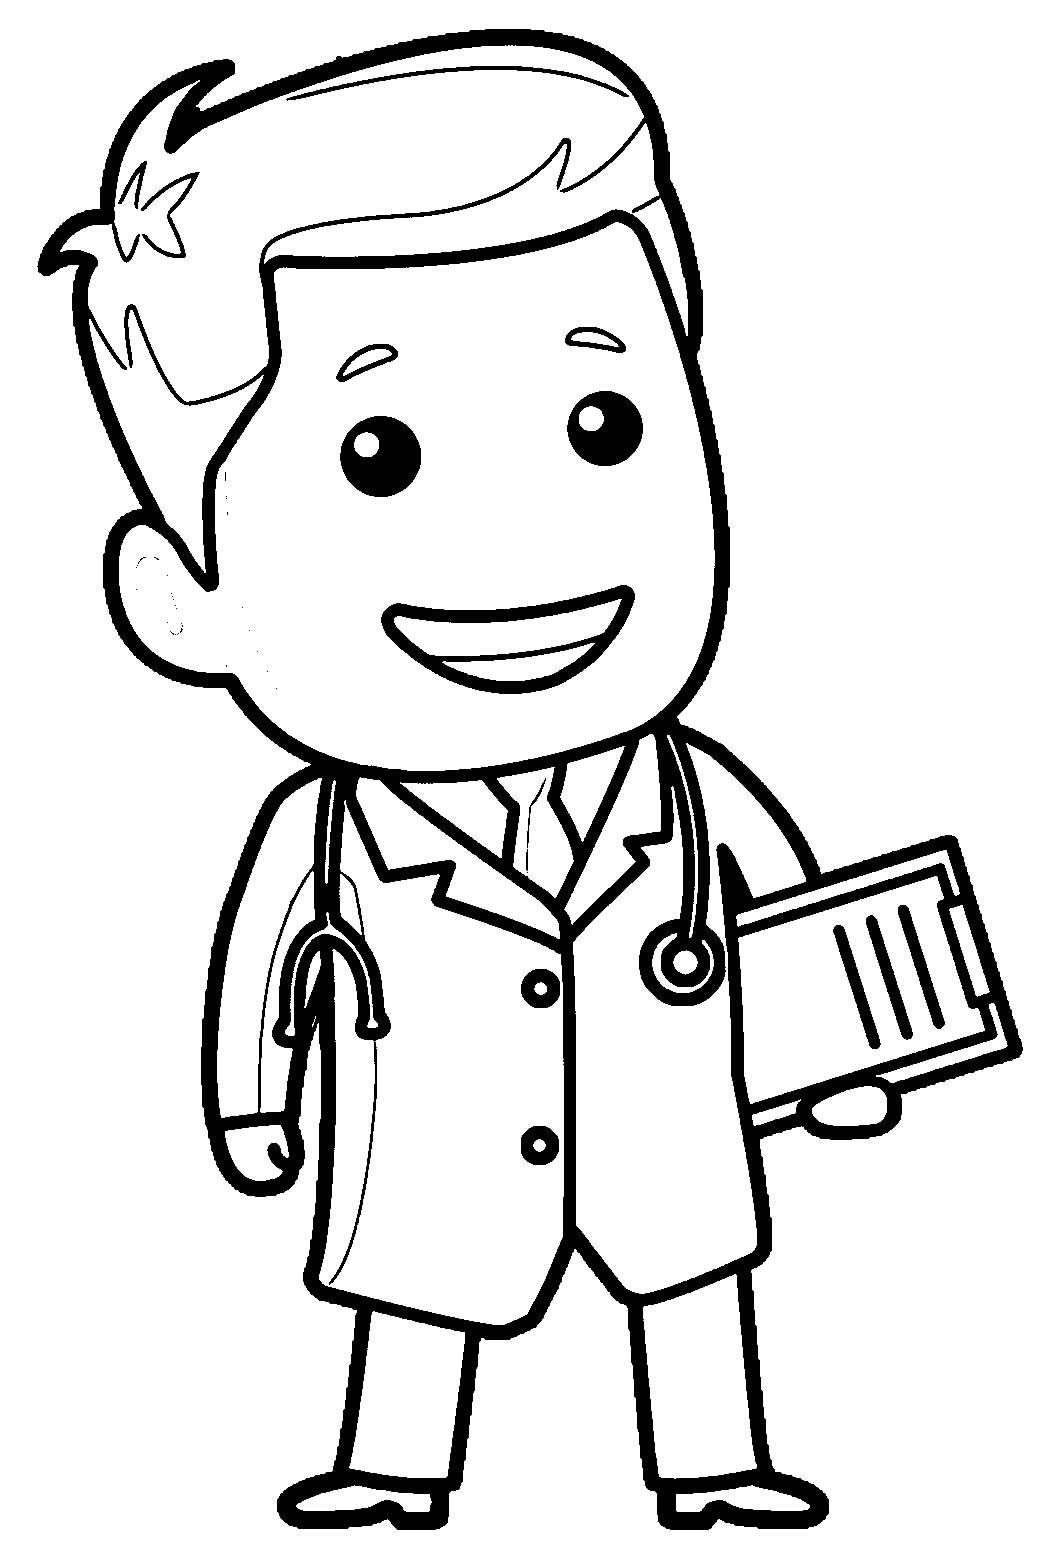 Como desenhar um médico #desenhosfaceislupedroso #medico 